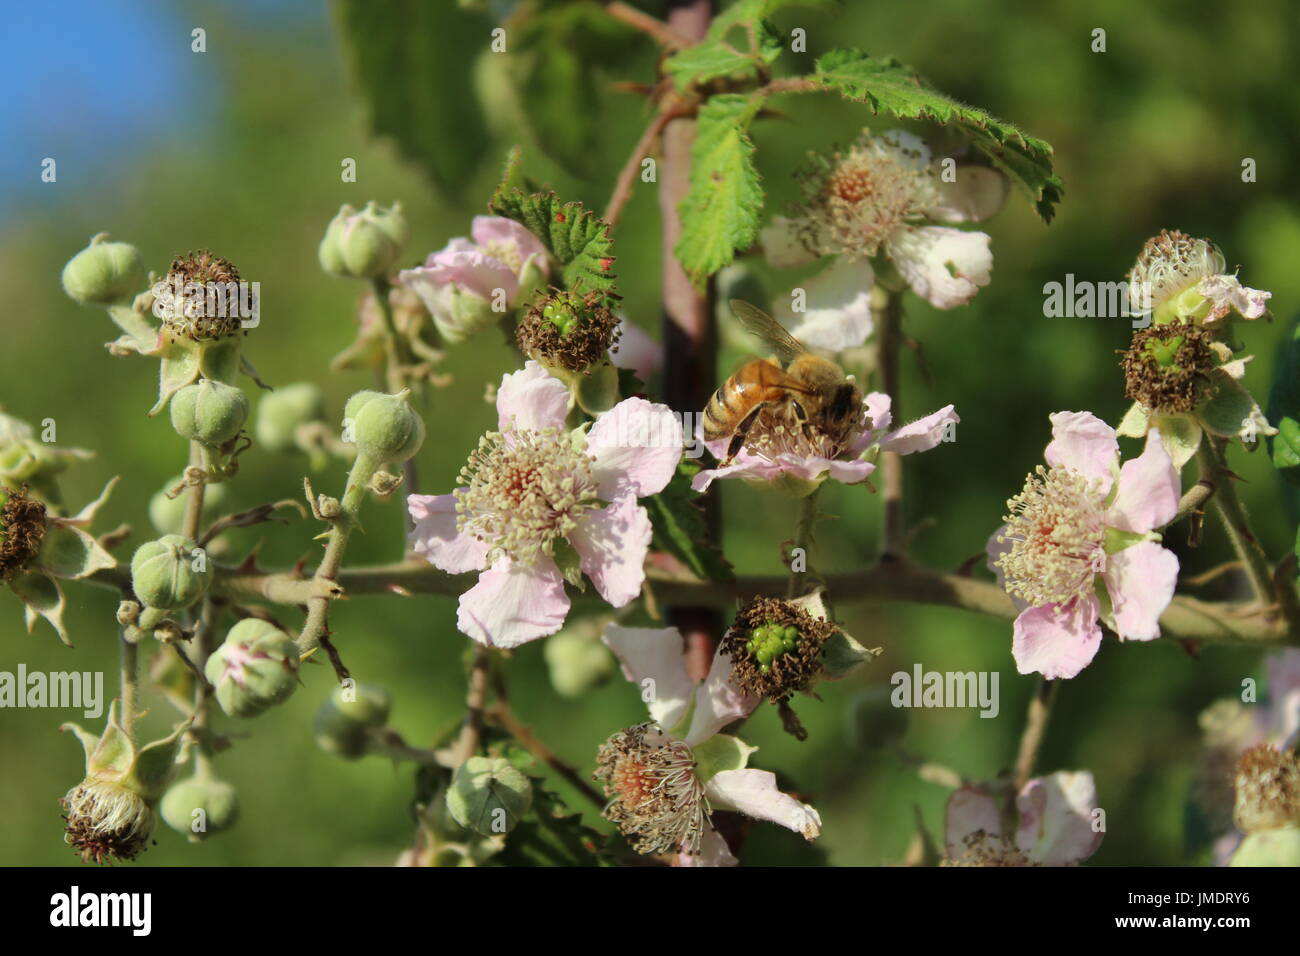 Les abeilles du miel sur bush blackberry blossom Banque D'Images